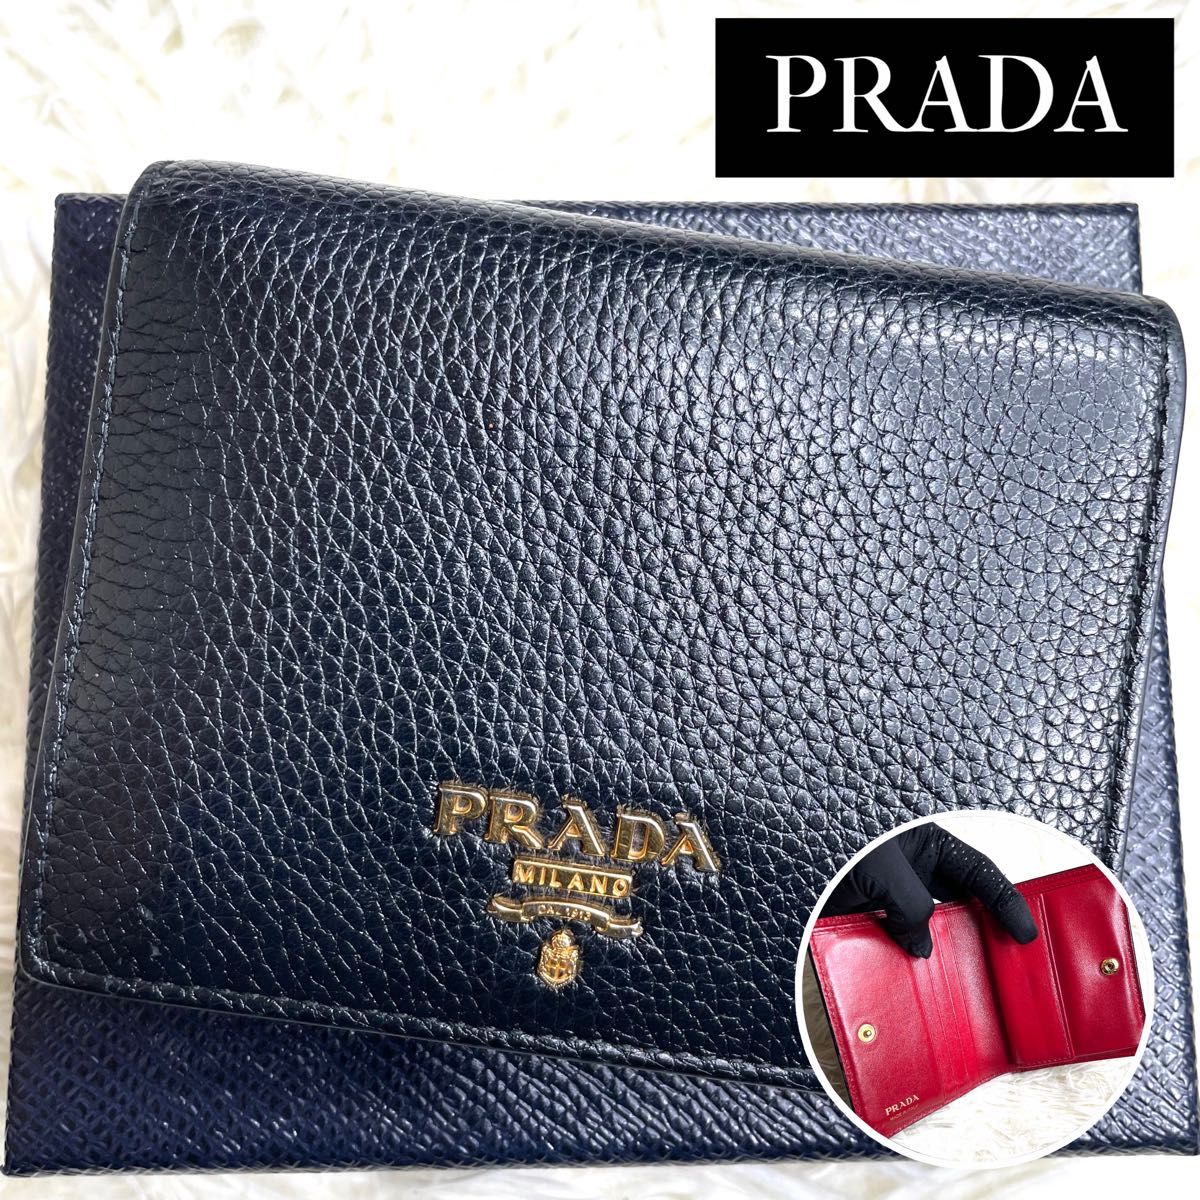 人気品 / PRADA プラダ ダイノバイカラーコンパクトウォレット 二つ折り財布 ヴィッテロダイノレザー ブラック 1MV204